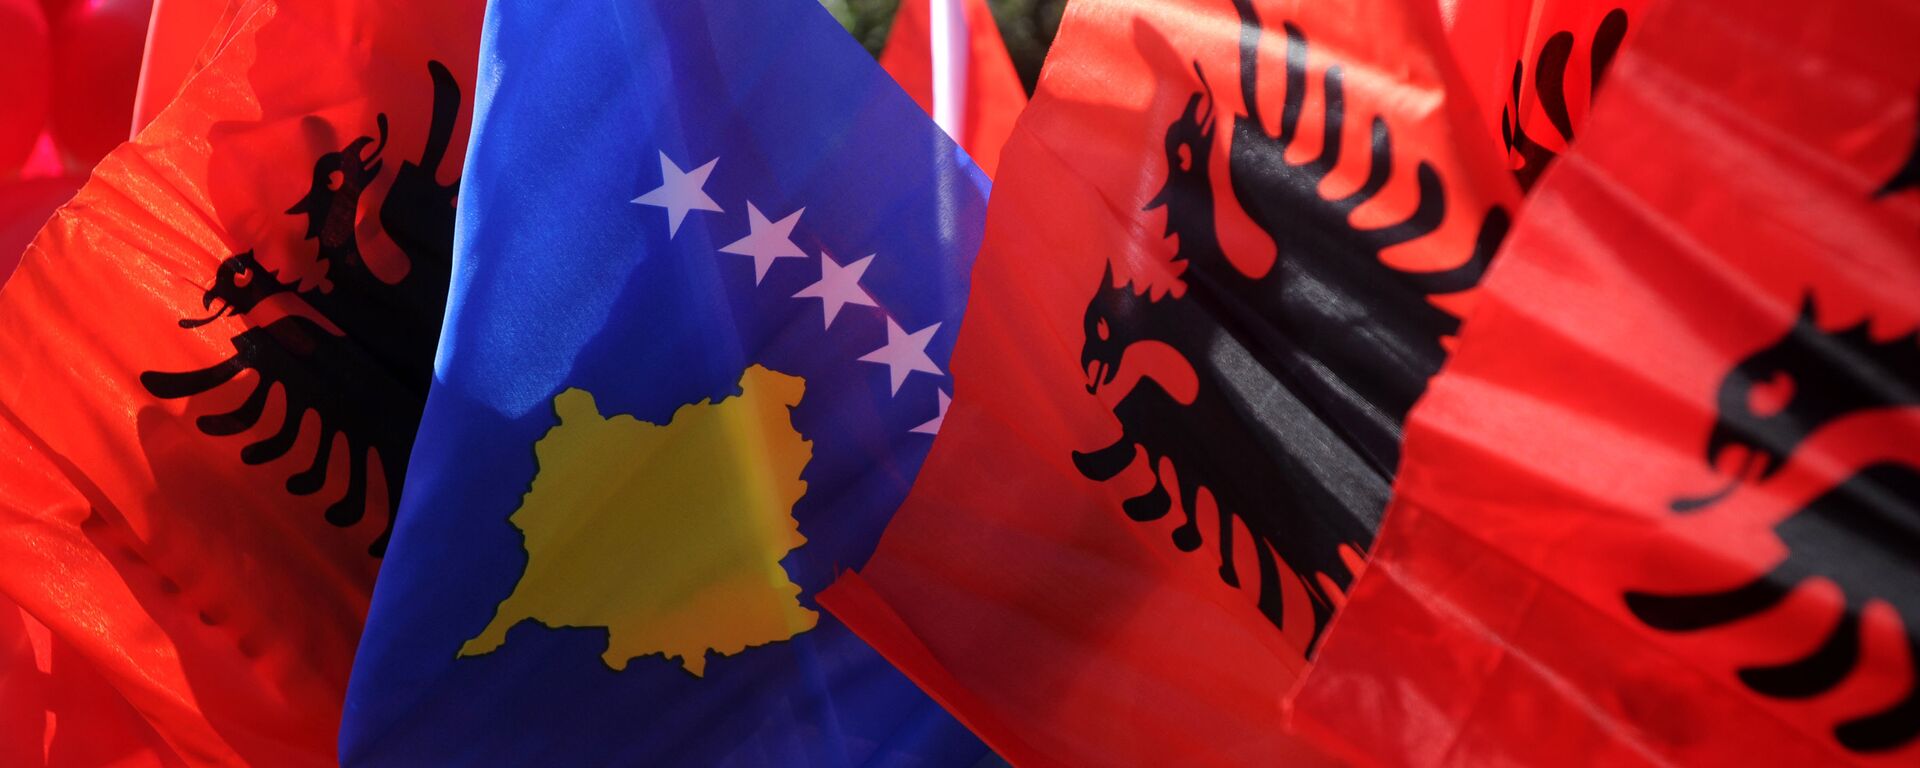 Zastave Albanije i Kosova - Sputnik Srbija, 1920, 26.11.2021